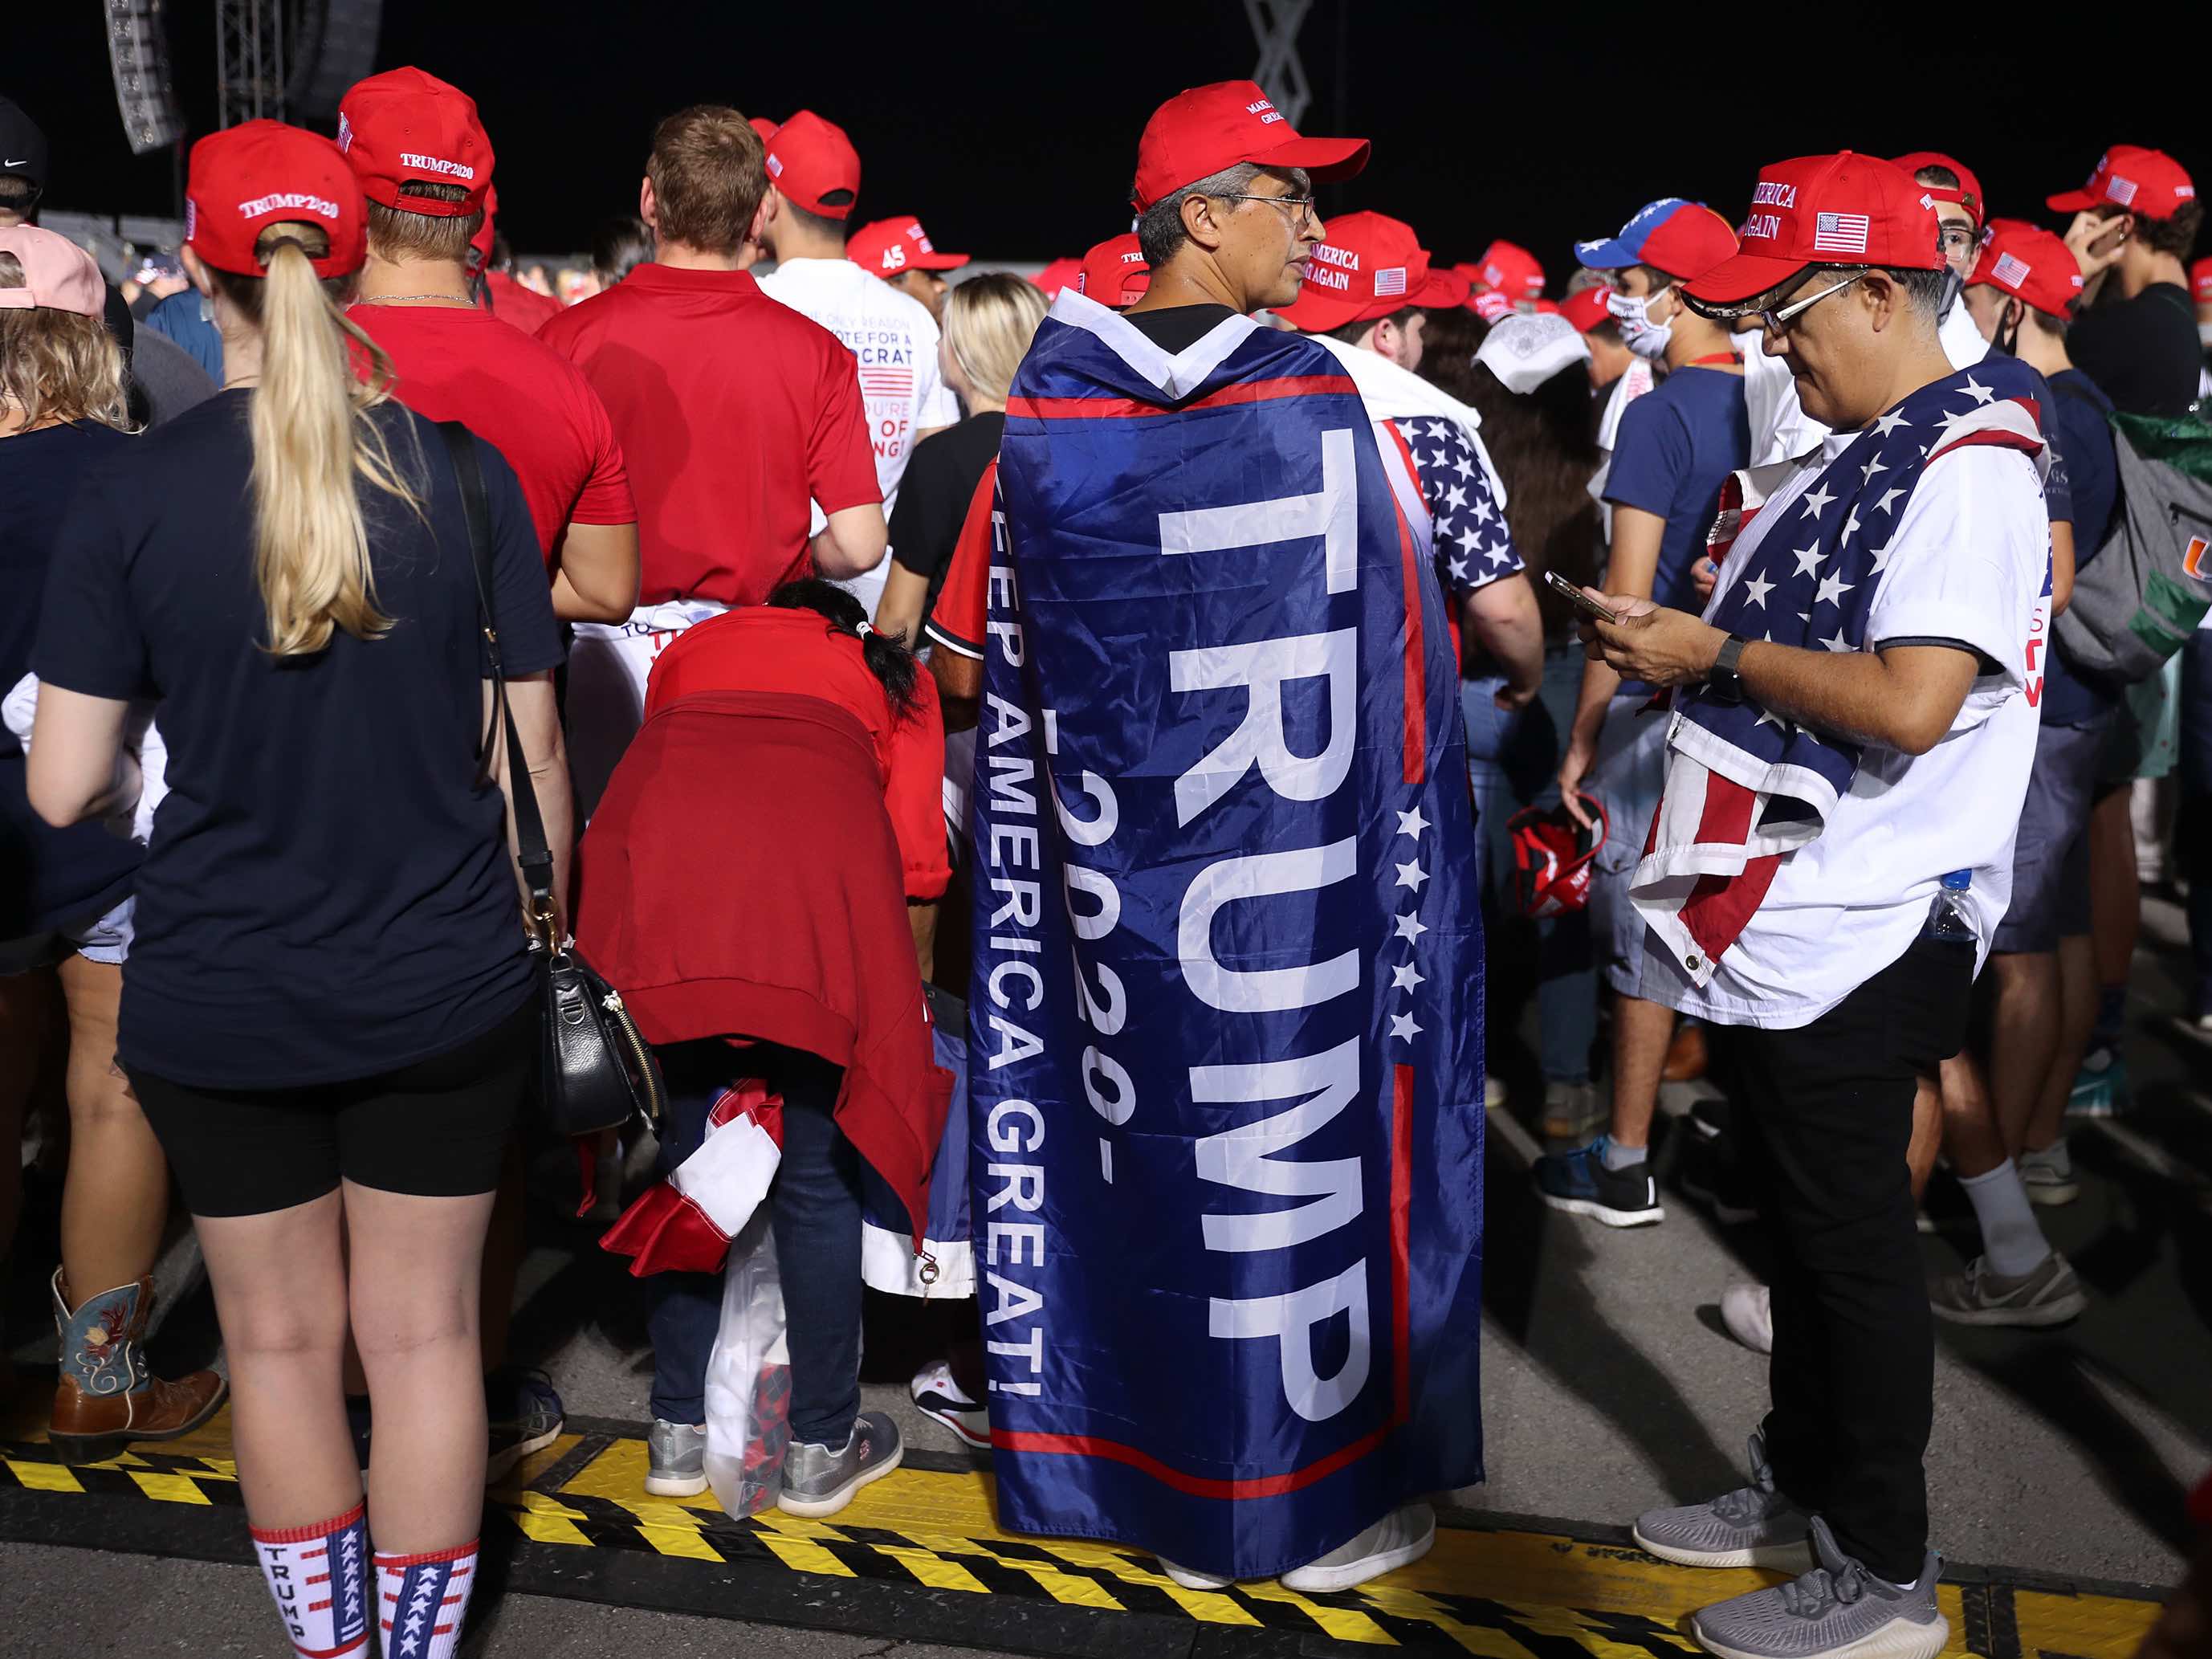 Trump supporters Miami (Joe Raedle / Getty)